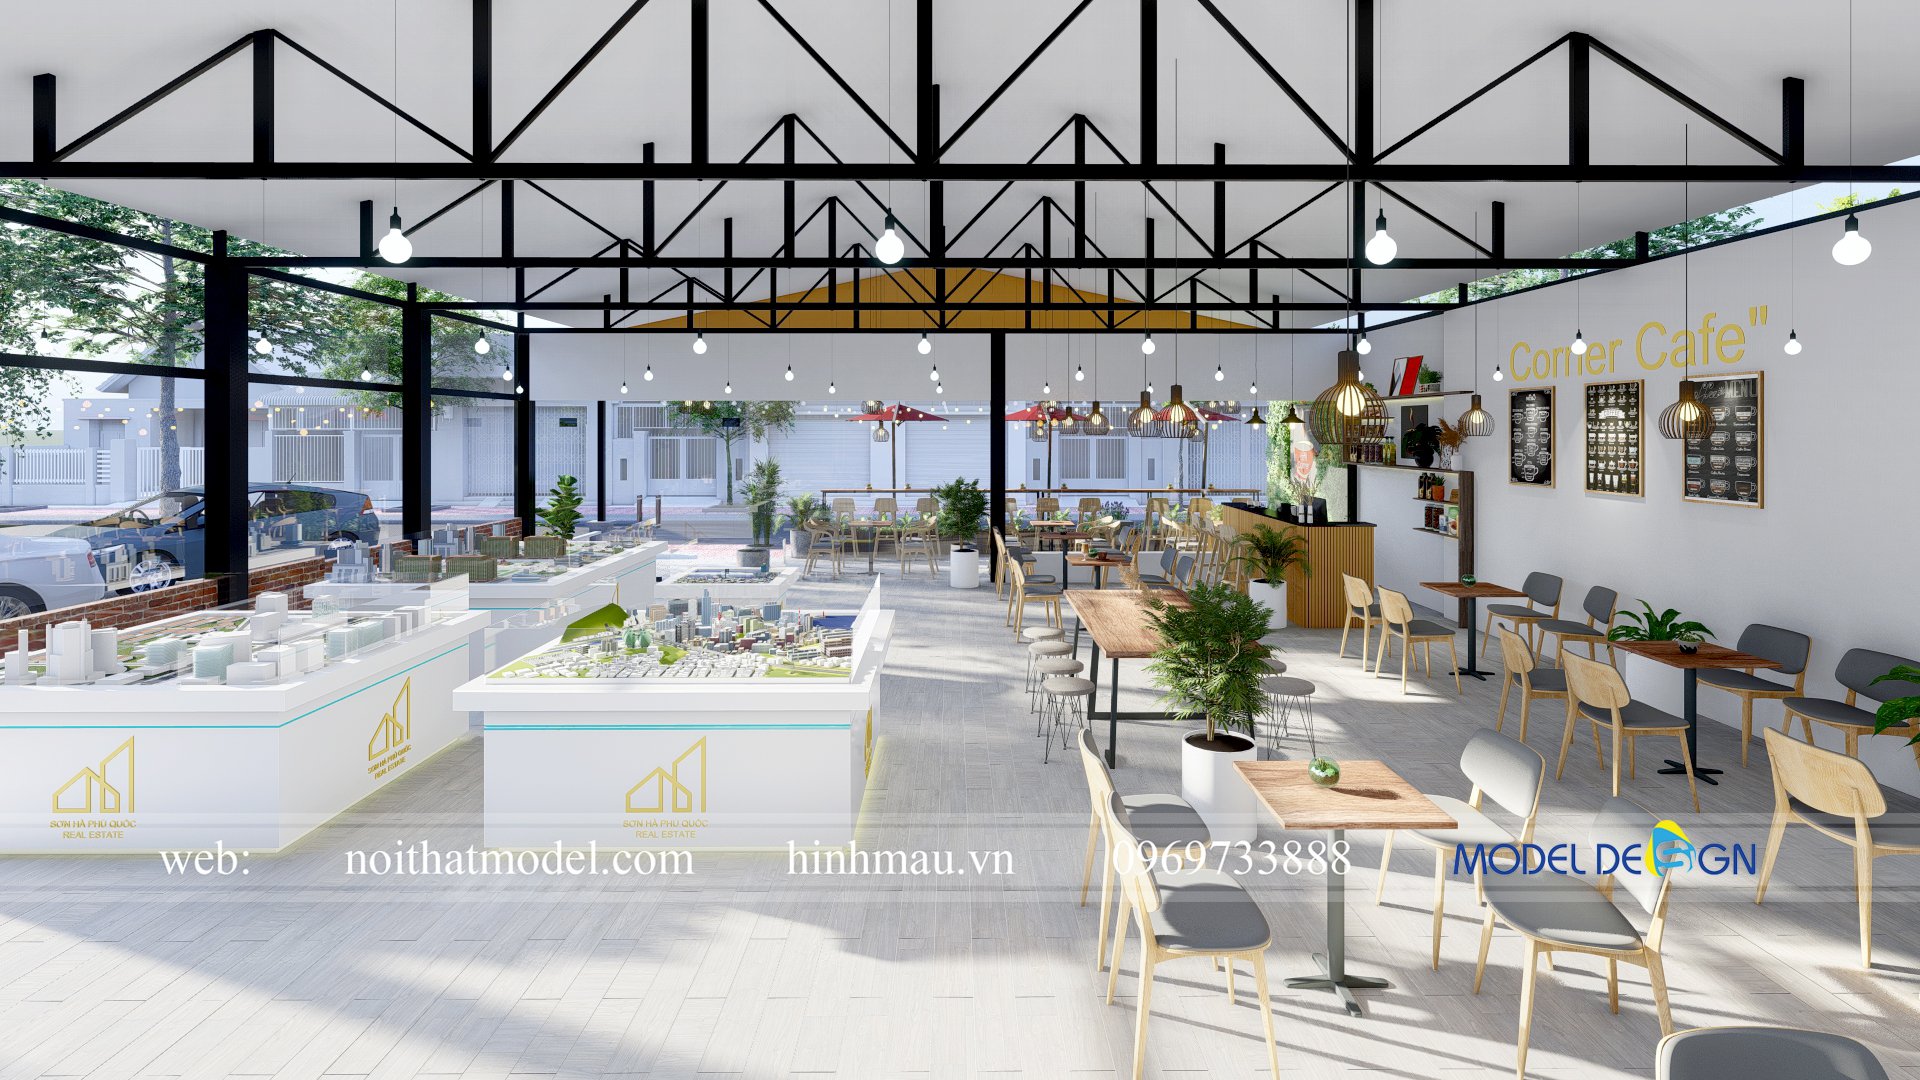 5 Mô Hình Thiết Kế Quán Cafe Đẹp Theo Xu Hướng Mới Nhất - Model Design